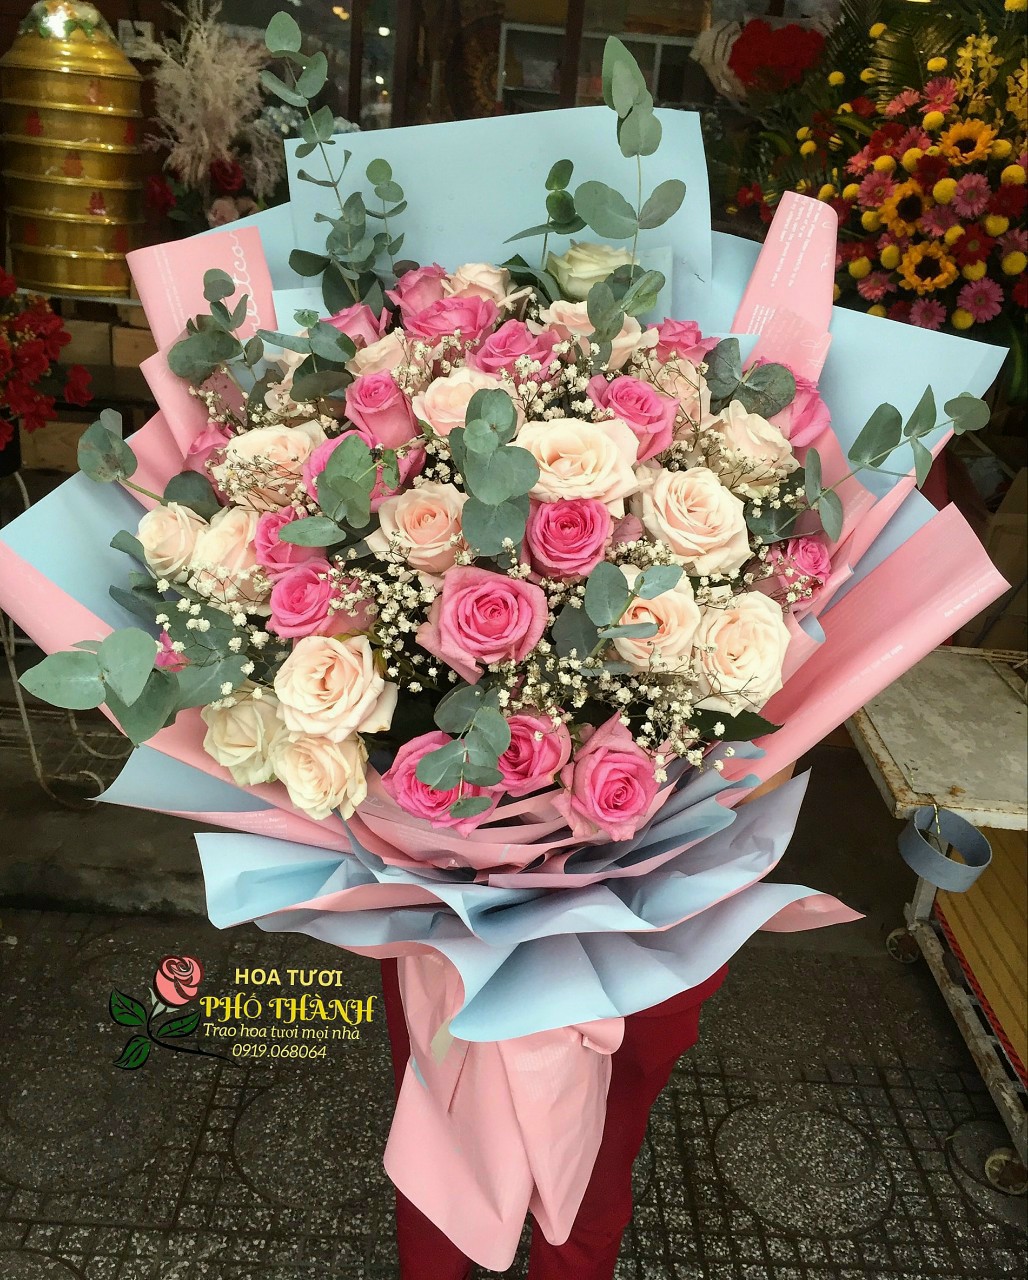 Bó hoa tặng người yêu đẹp lãng mạn tinh khôi sang trọng tạo cảm xúc bất ngờ, gửi tặng người yêu dấu tại Shop Hoa Tươi Phố Thành Rạch Giá Kiên Giang.